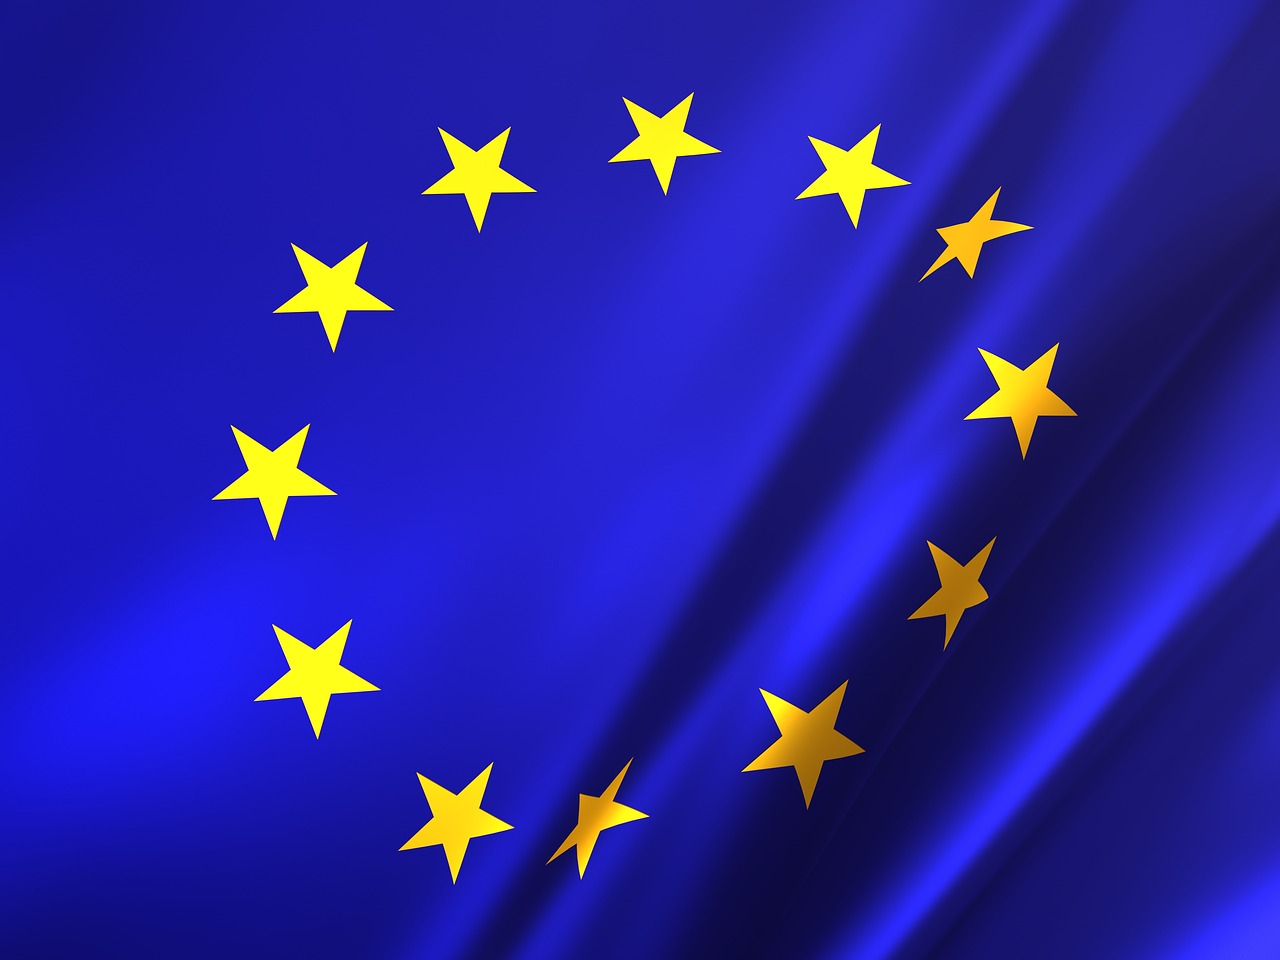 Flaga Unii Europejskie, dwanaście żółtych gwiazd na niebieskim tle